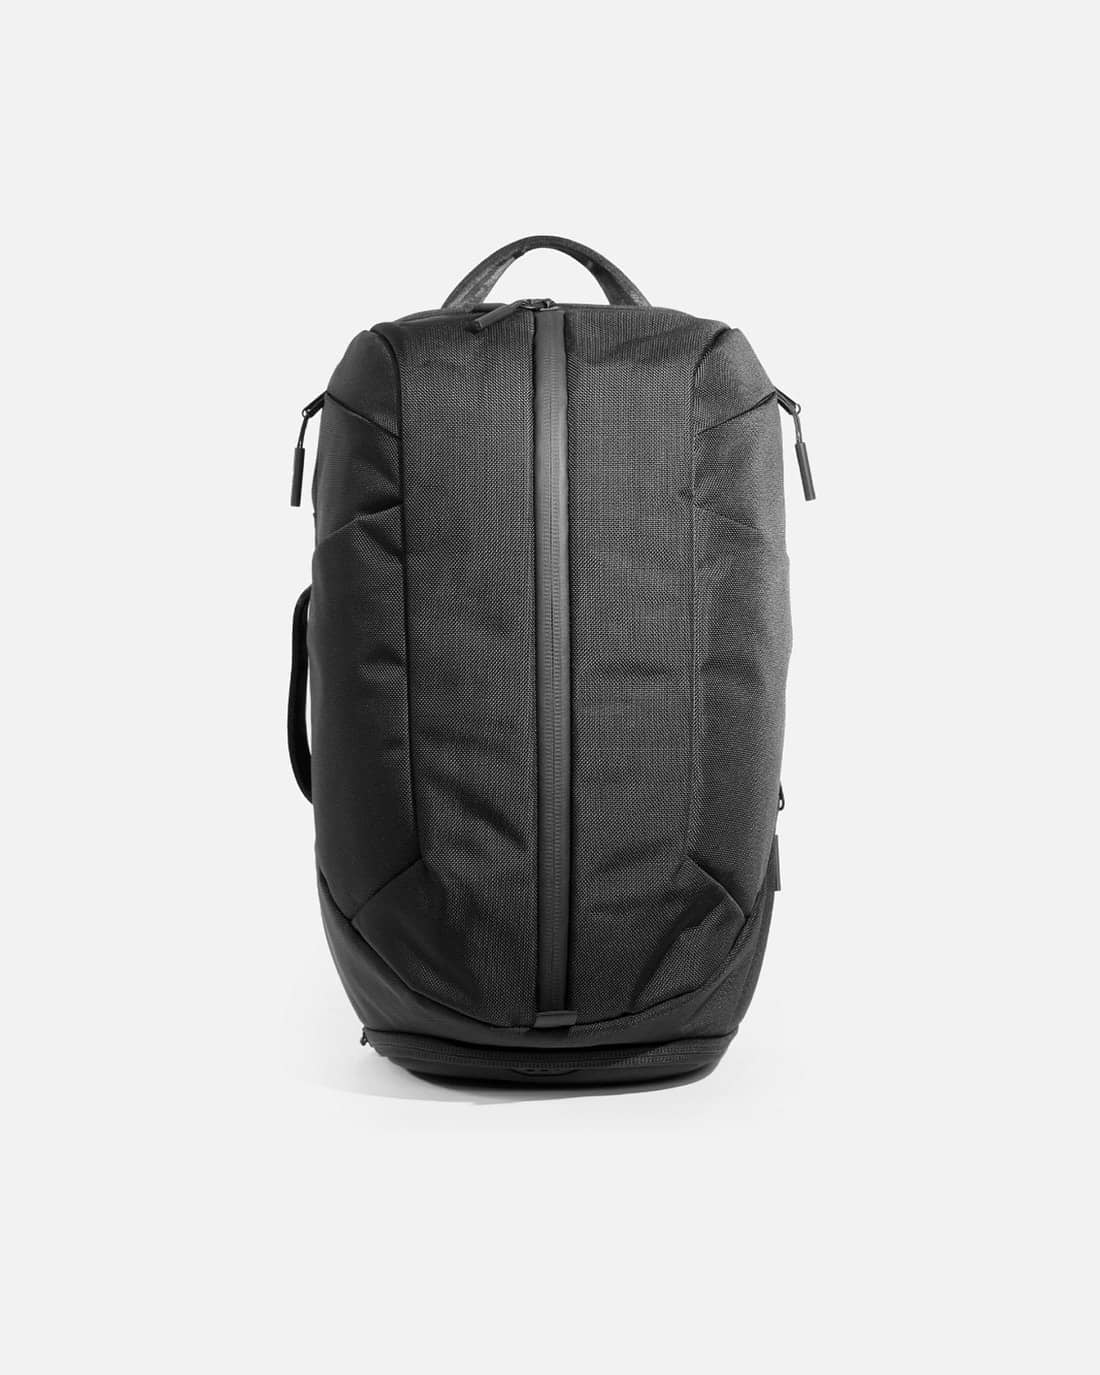 Aer gym backpack